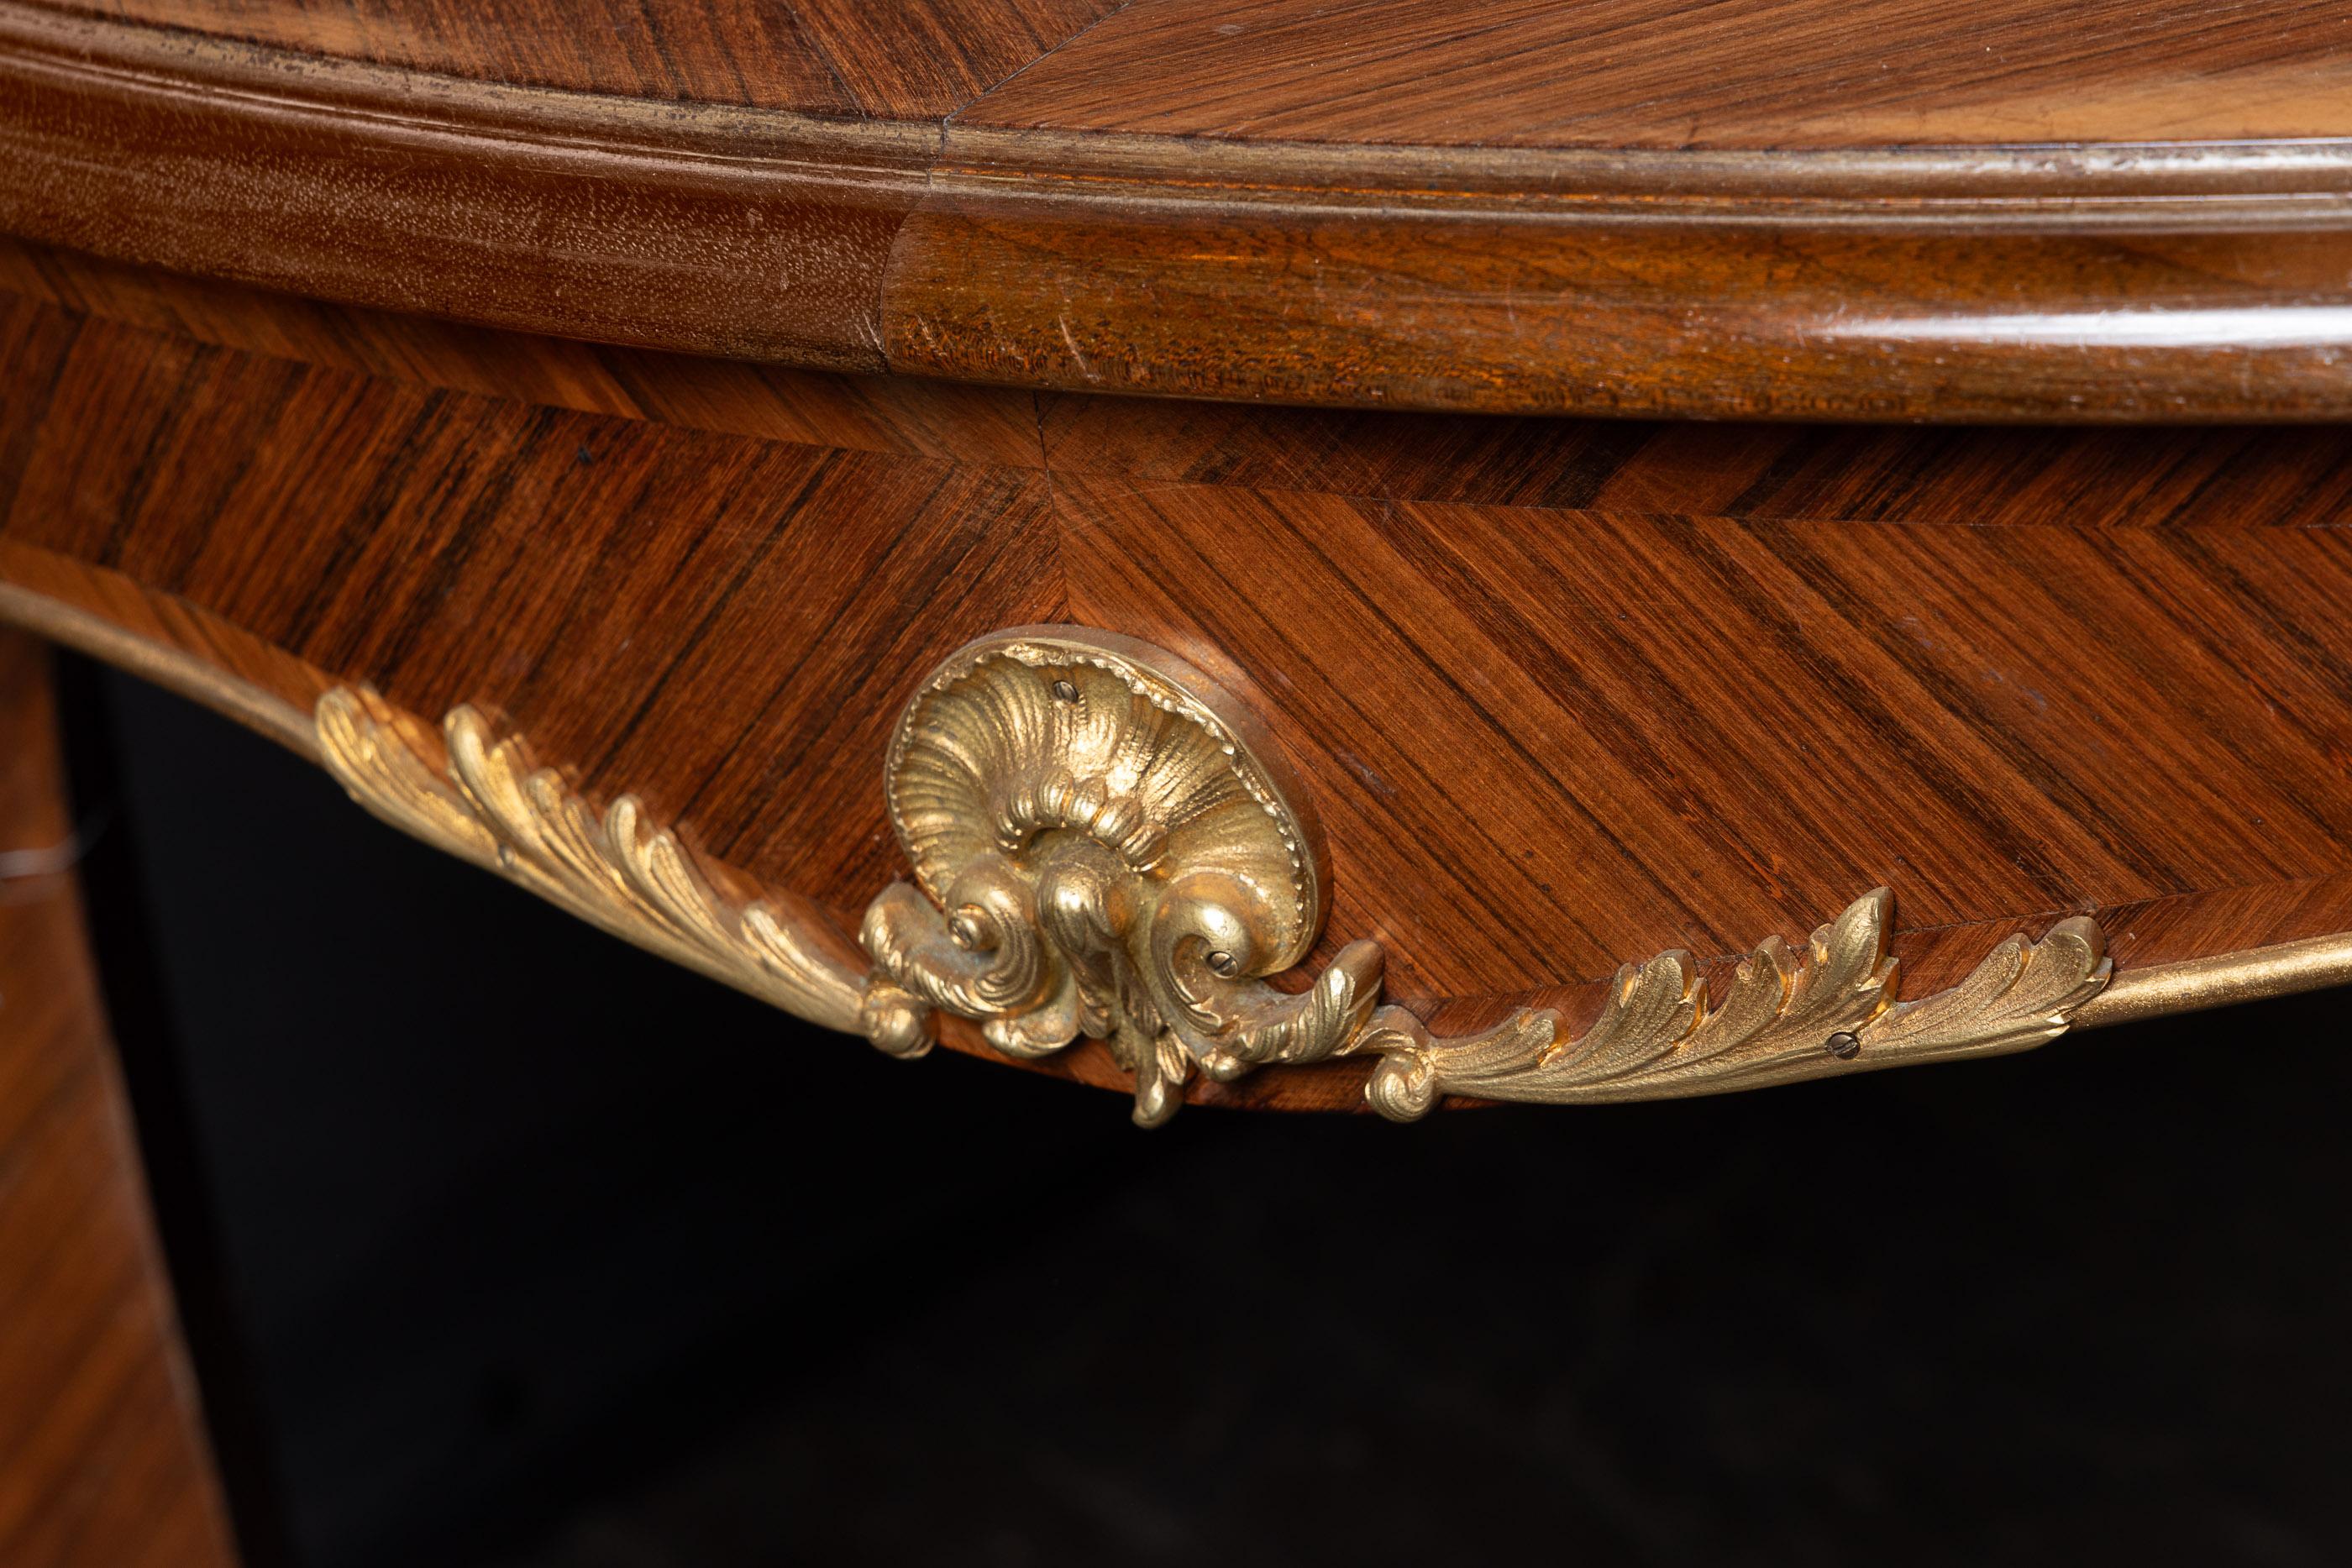 Magnifique table de salle à manger en marqueterie française du 19ème siècle. Cette pièce est un bel exemple du style Louis XV. Elle est ornée de montures en bronze d'or et d'une feuille de marqueterie assortie. La pièce possède son plateau d'origine